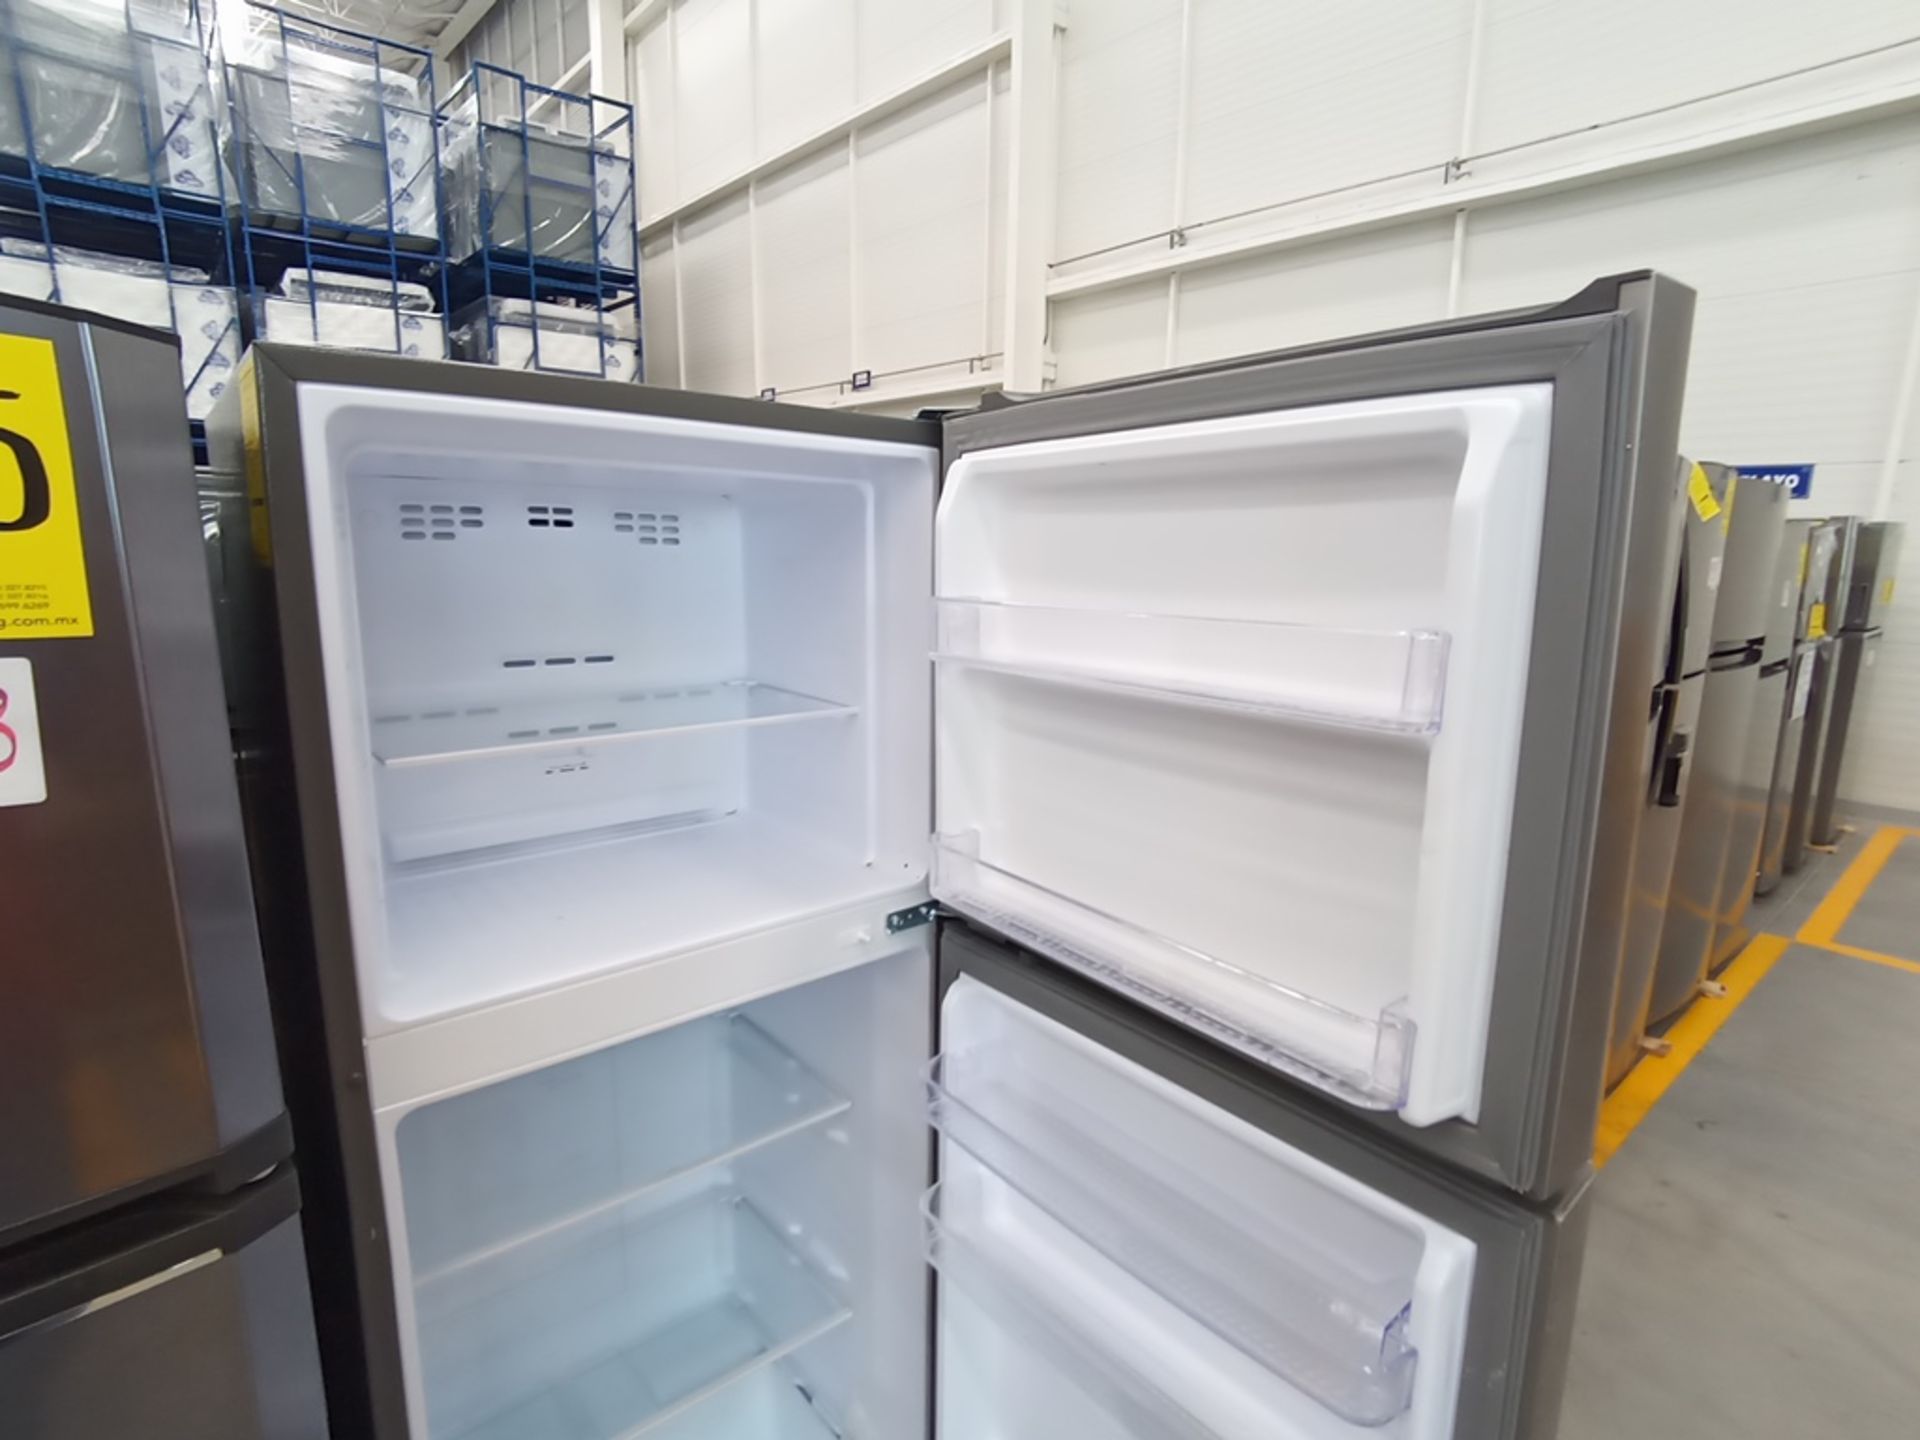 Lote de 2 Refrigeradores contiene: 1 Refrigerador Marca Winia, Modelo DFR-32210GNV, Serie MR216N130 - Image 11 of 15